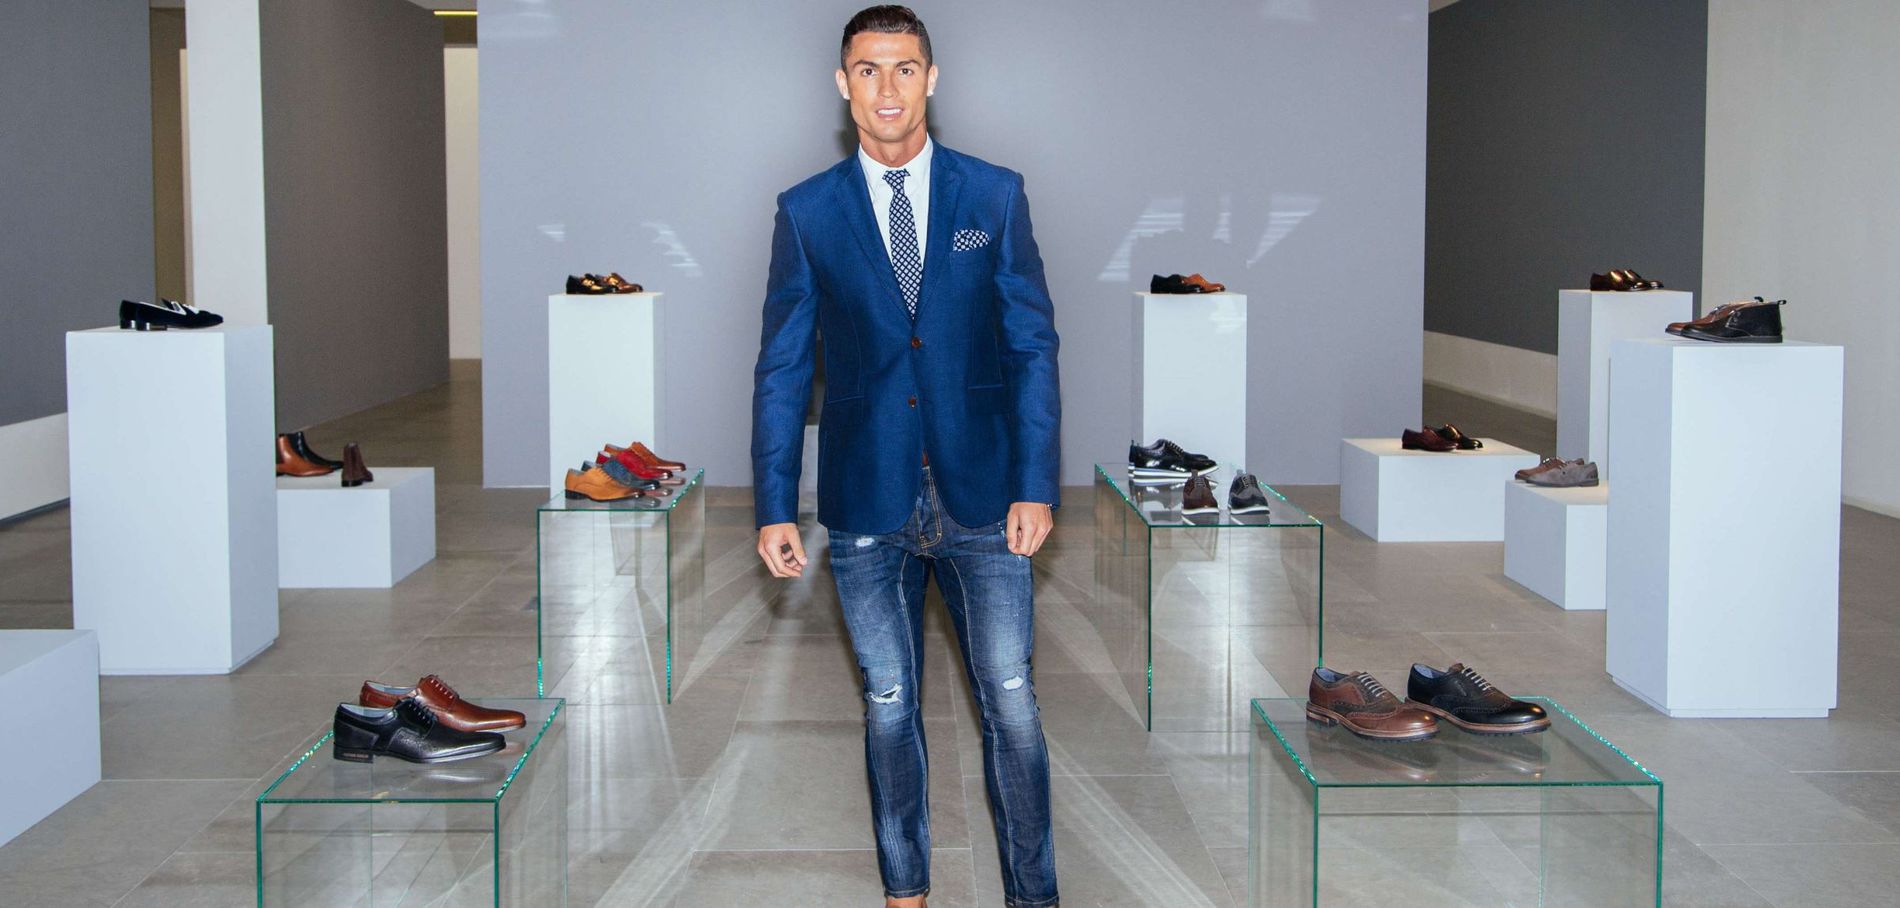 Cristiano-Ronaldo-lors-de-la-presentation-de-la-ligne-de-chaussures-de-sa-marque-CR7-en-2015_exact1900x908_l